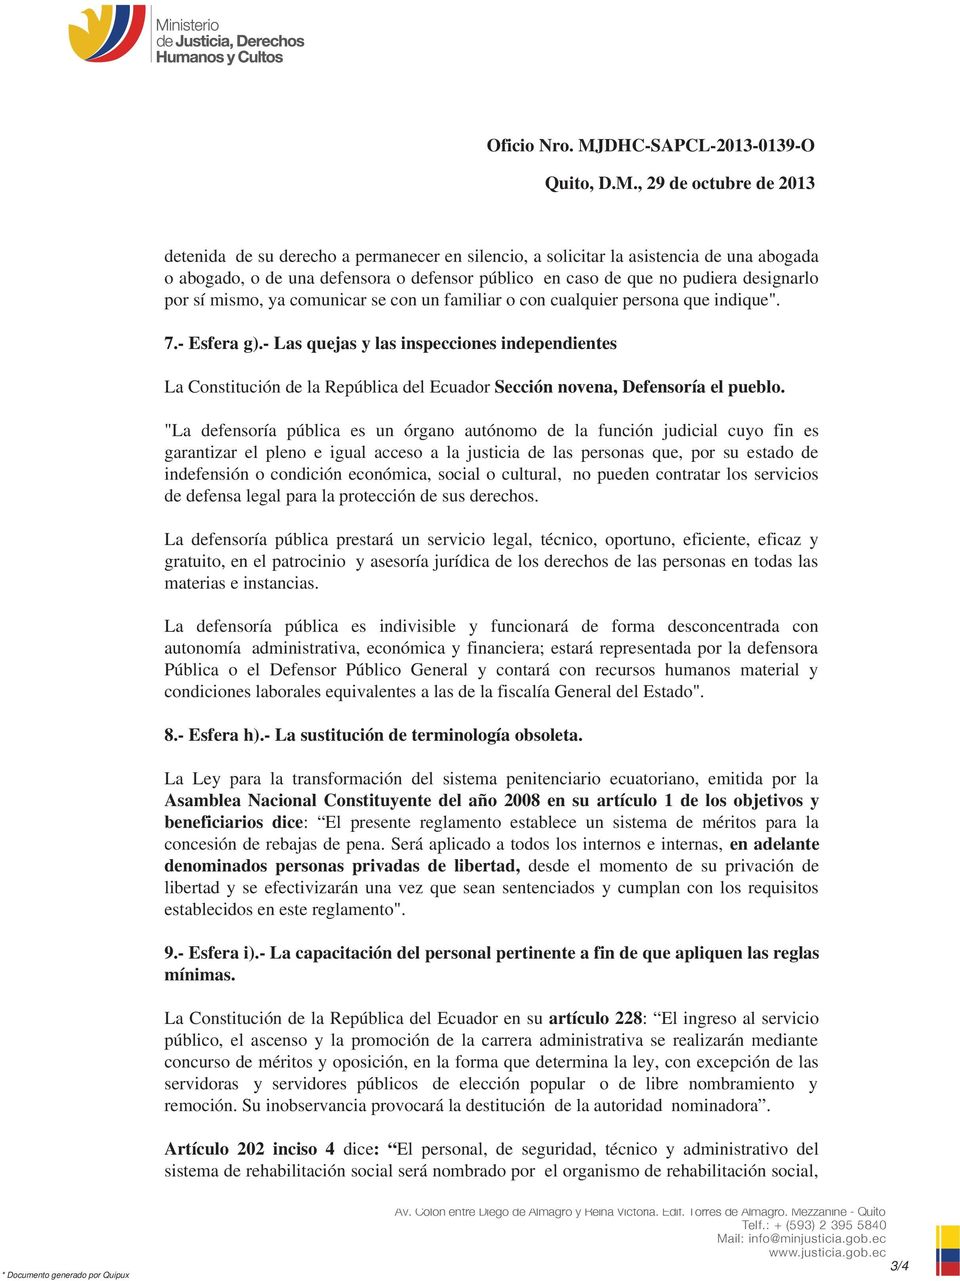 - Las quejas y las inspecciones independientes La Constitución de la República del Ecuador Sección novena, Defensoría el pueblo.